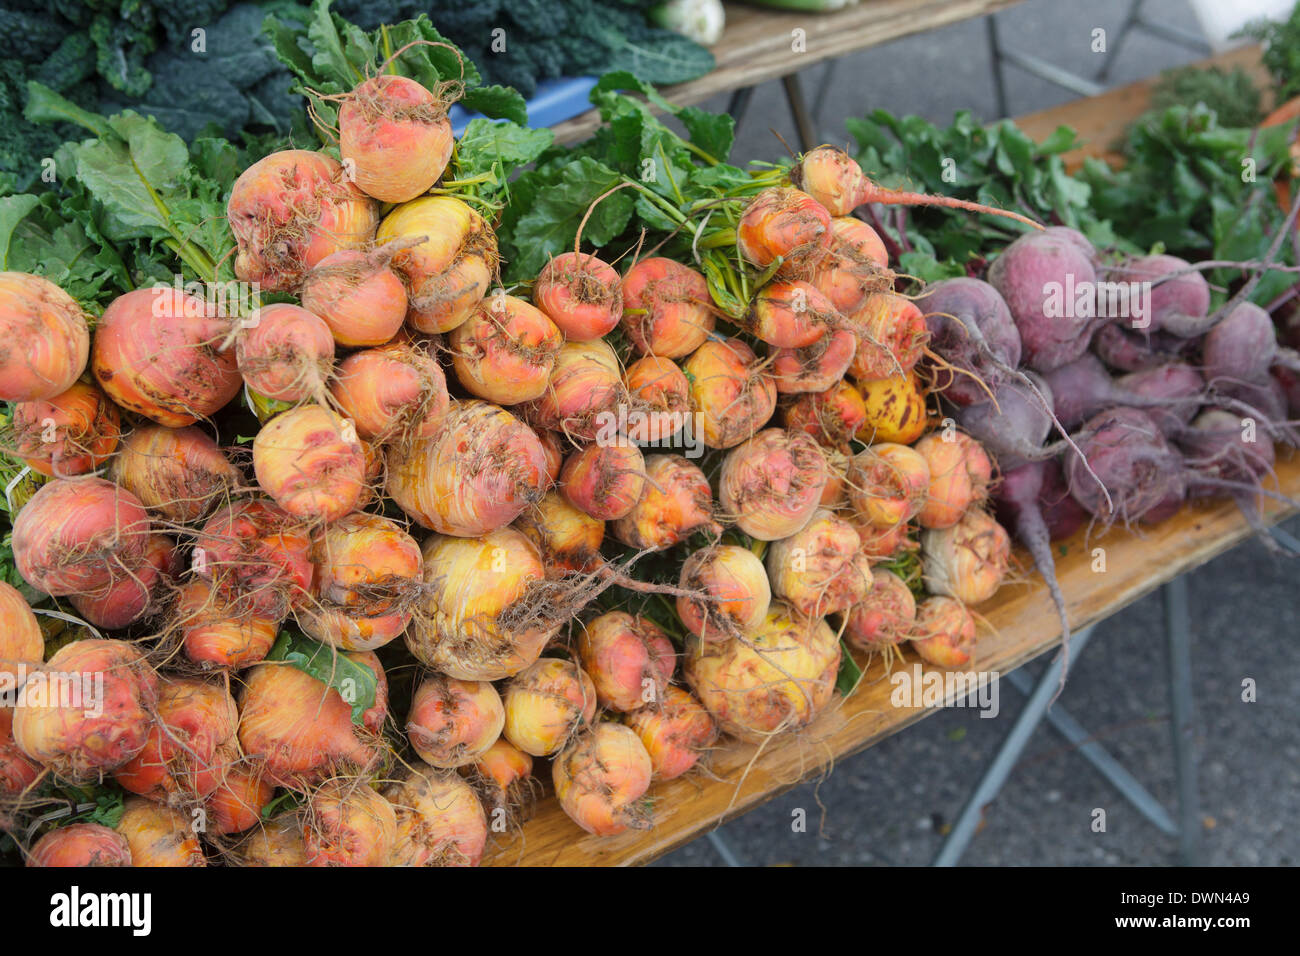 Frisch gepflückten orangene Rüben auf einem Bauernmarkt Stockfoto